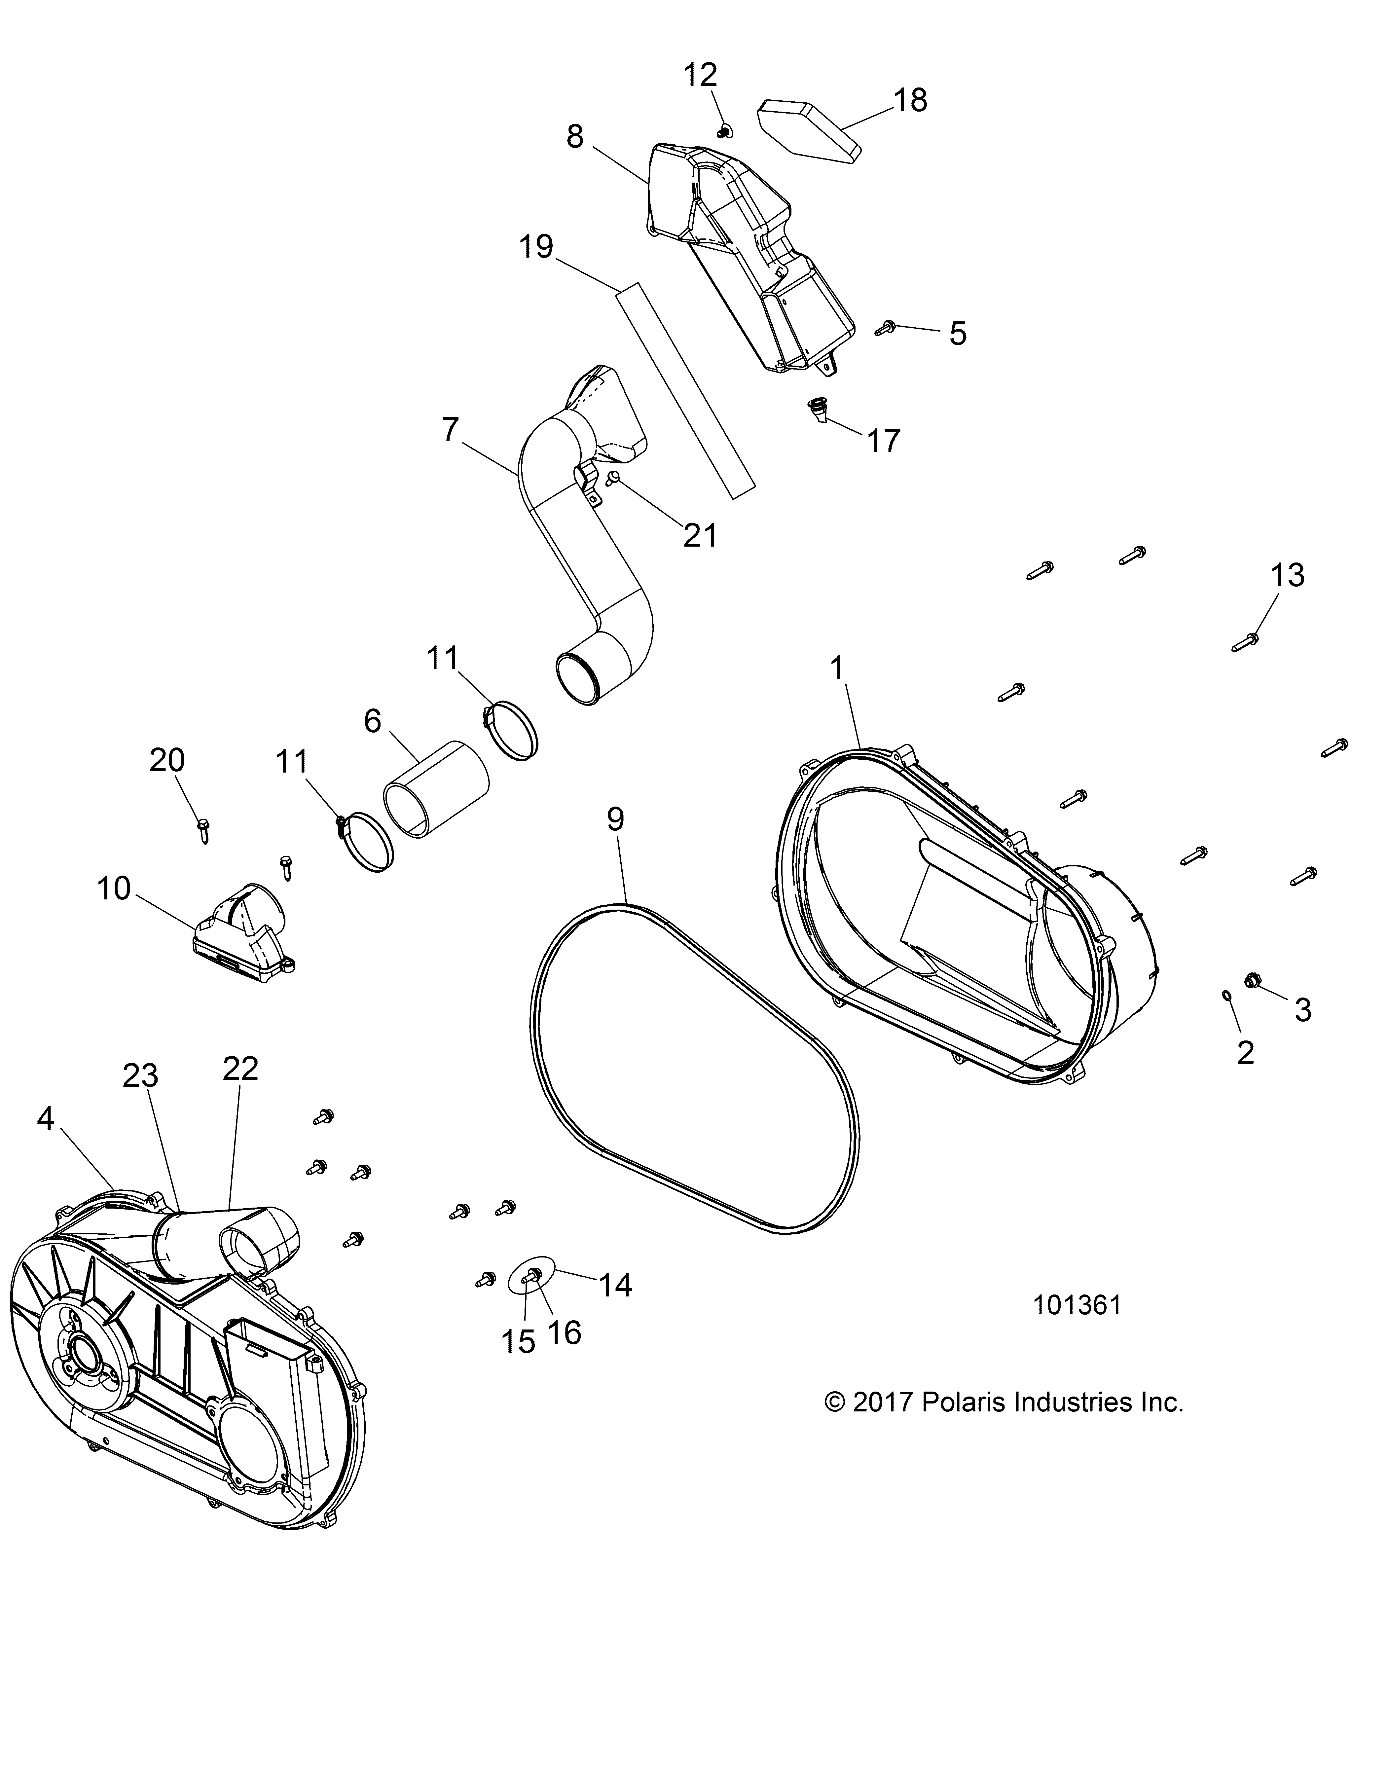 Foto diagrama Polaris que contem a peça 2634179